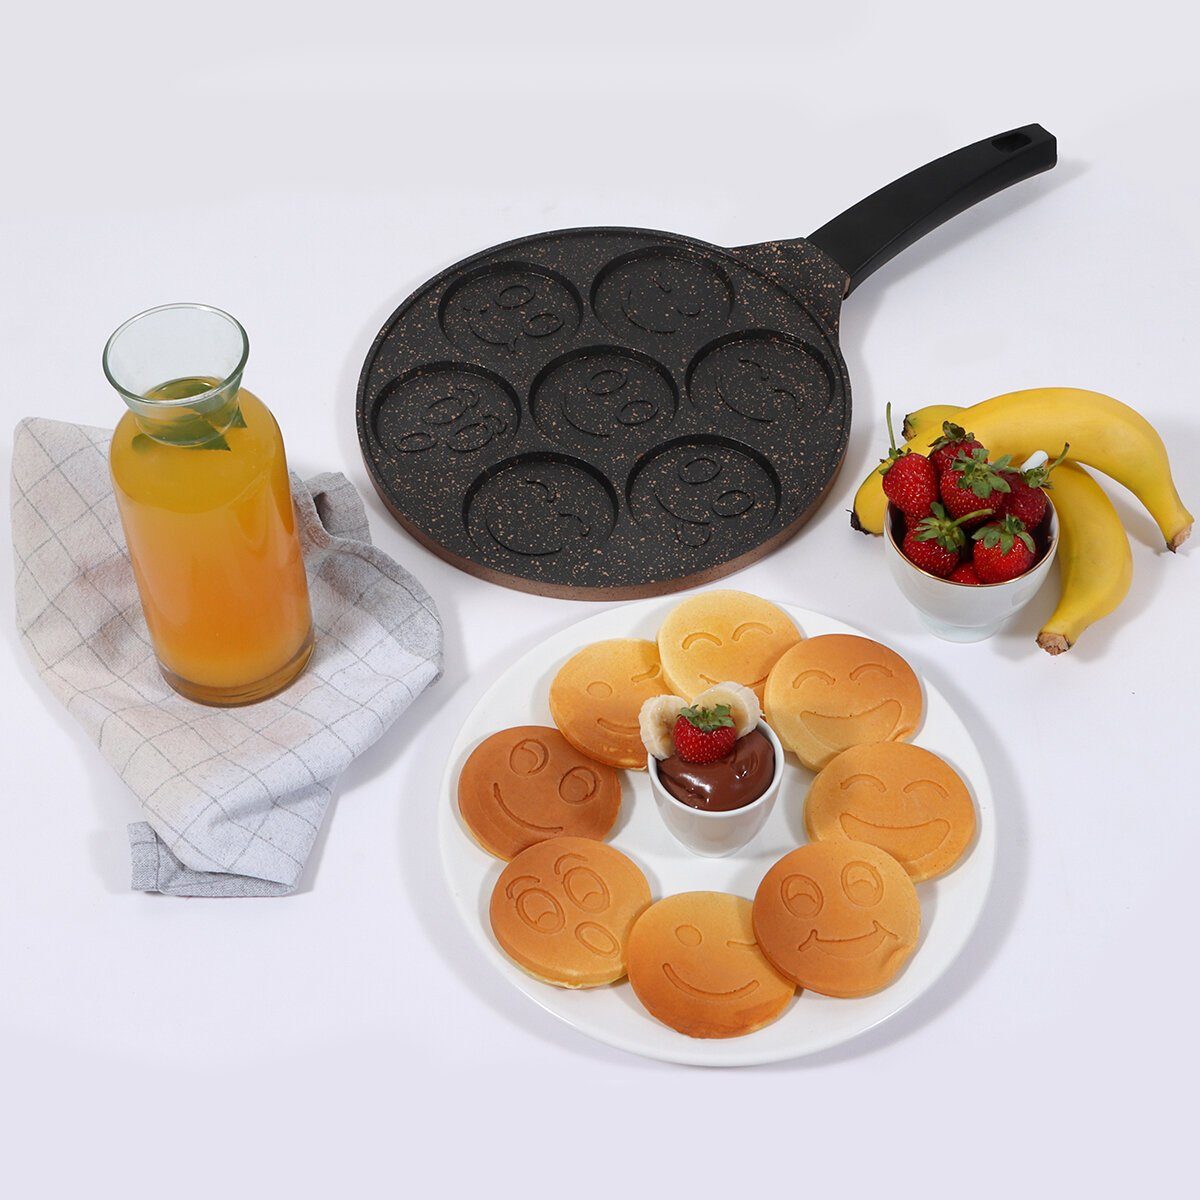 SERENK Pancake-Maker Serenk Cooking Fun Pancake Pfanne, Pancake cm Maker, 26